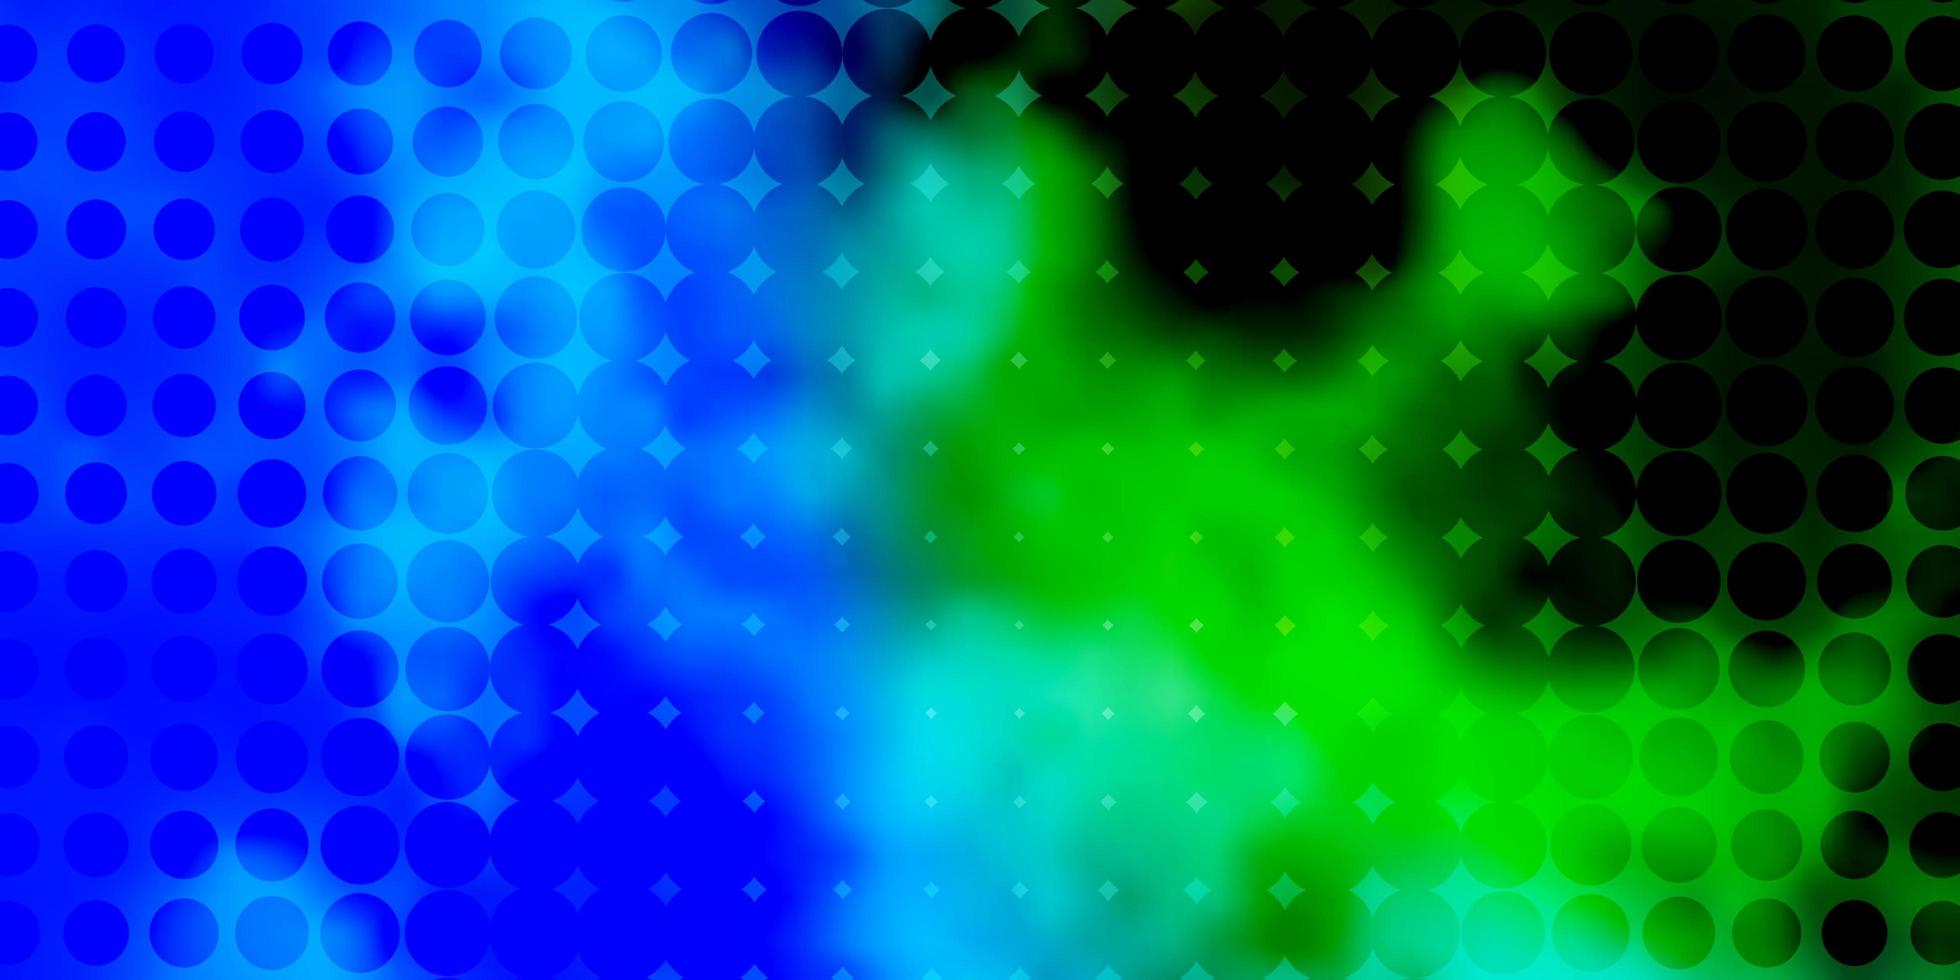 ljusblå, grön vektorlayout med cirkelformer. vektor